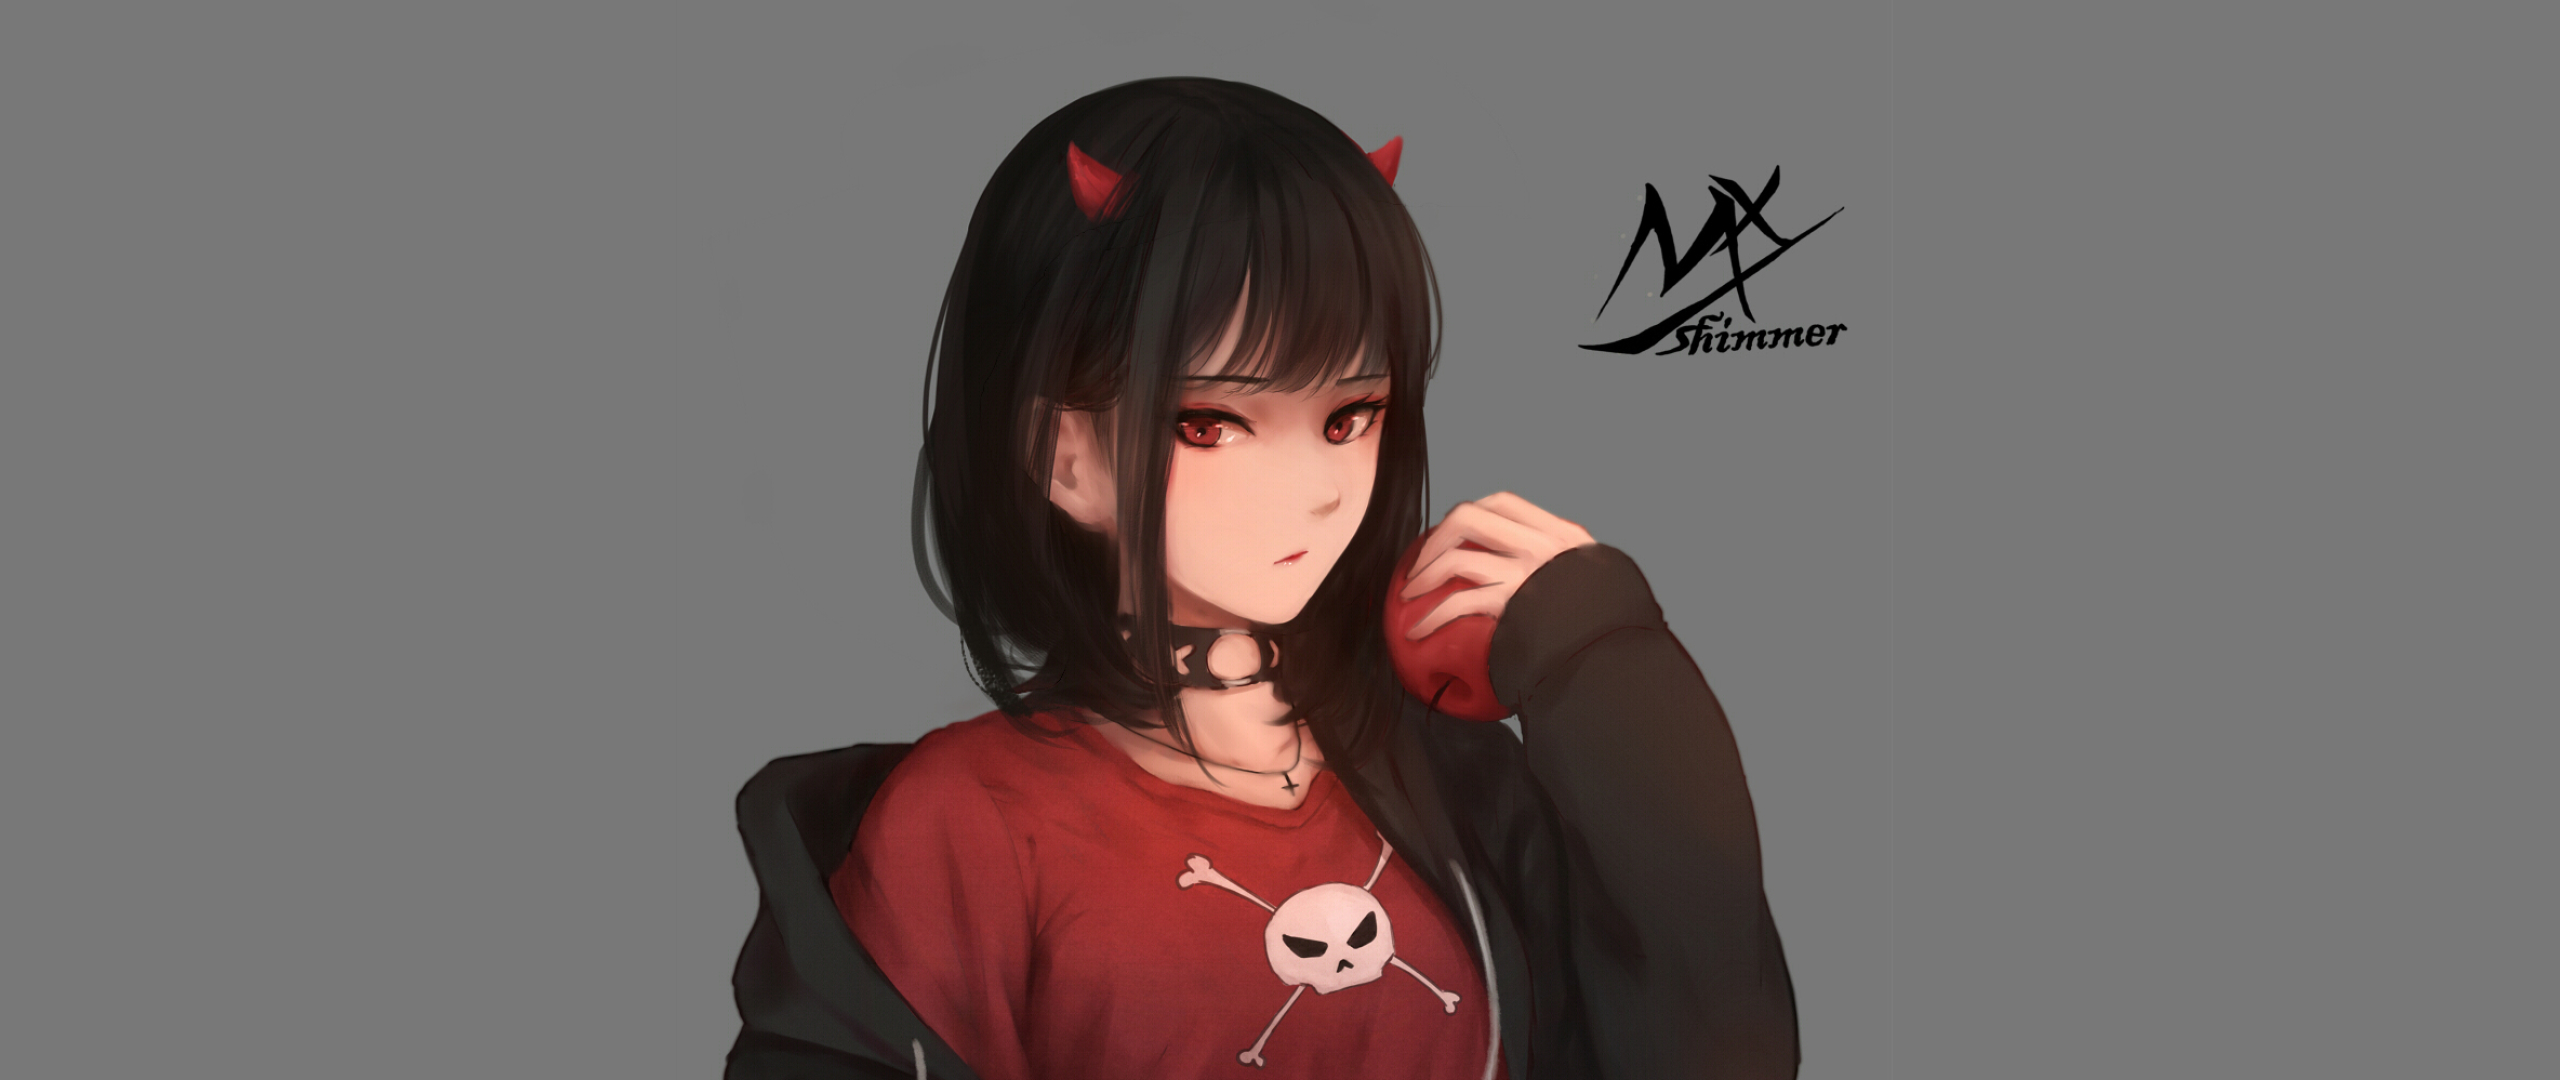 Anime Demon Girl Wallpaper Free 2560X1080 Anime Demon Girl Background